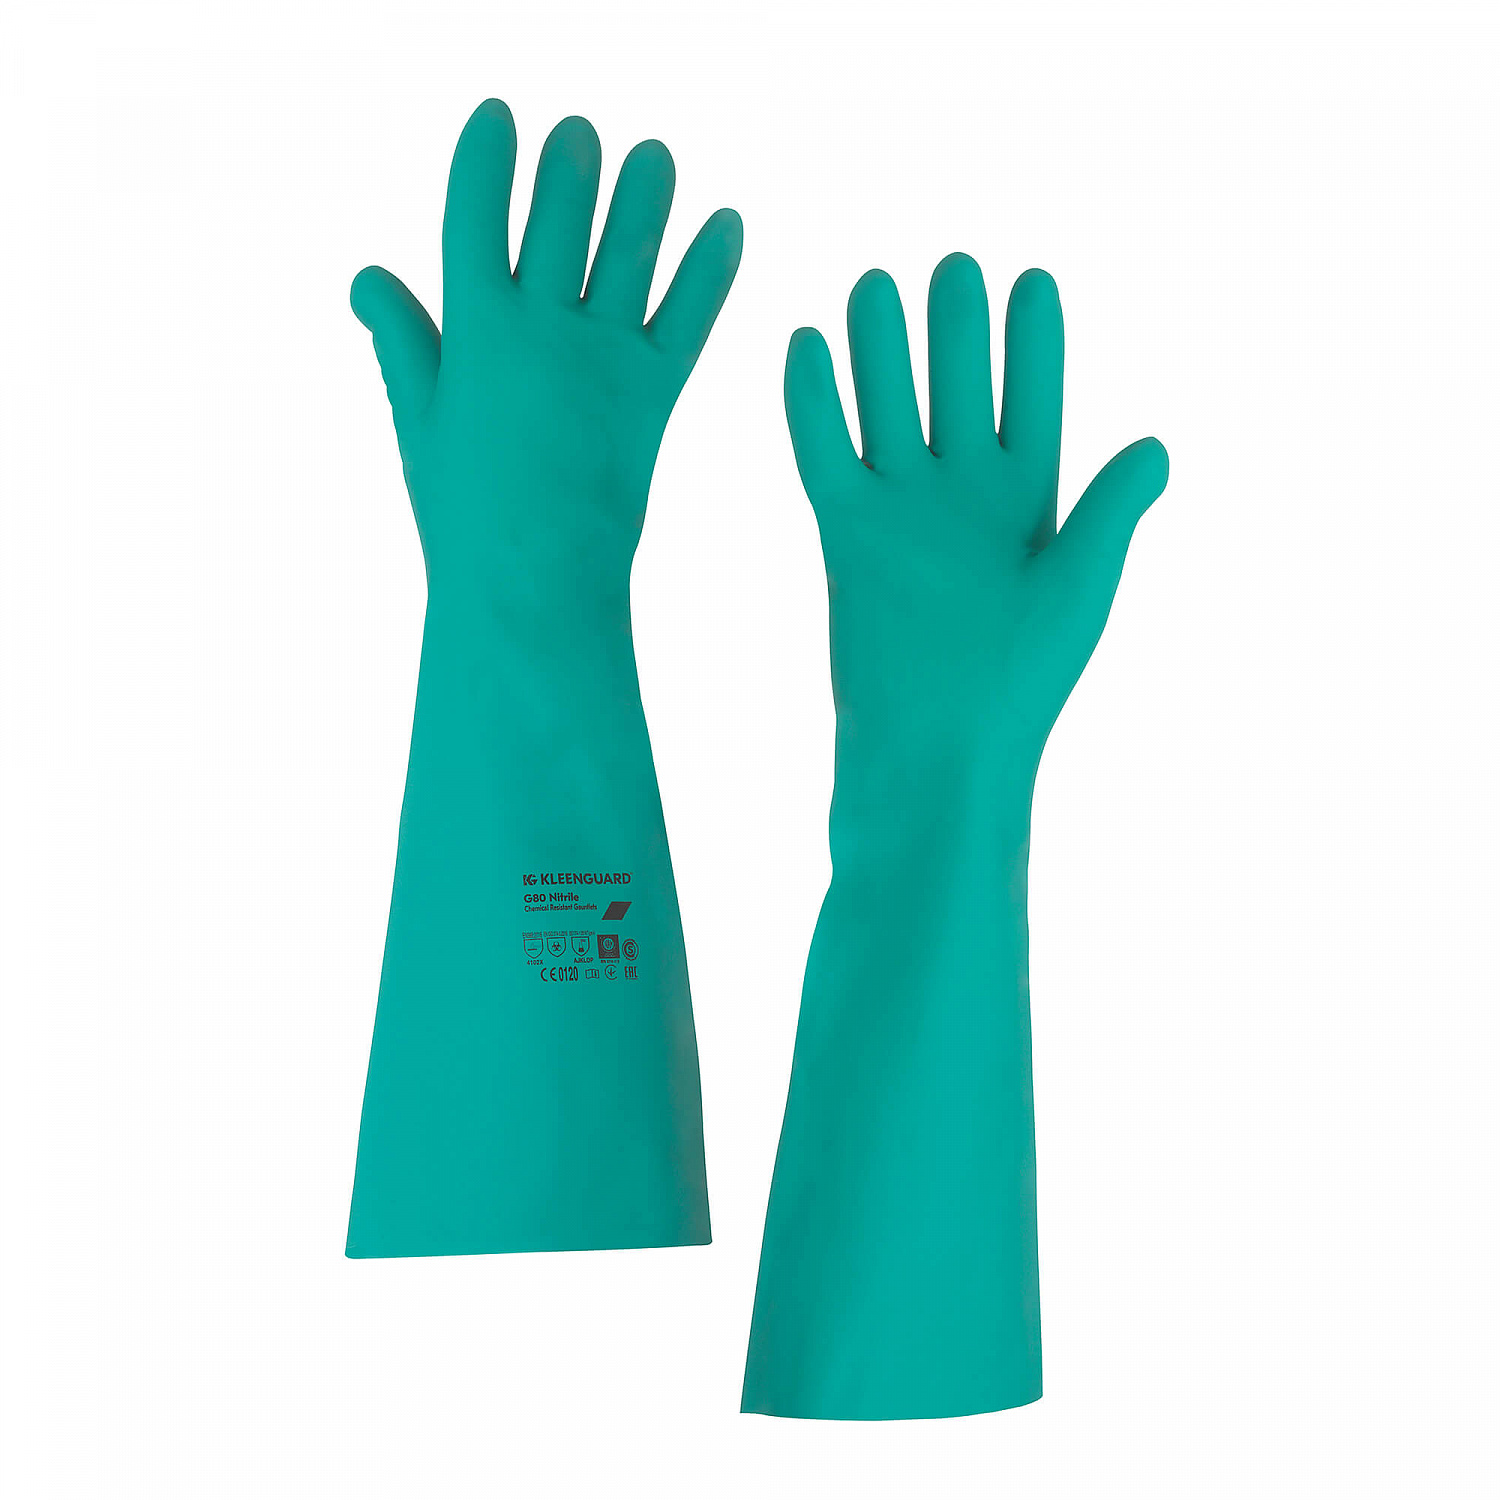 Перчатки-нарукавники Jackson Safety хим. стойкие G80 нитрил, разм. 10  (1 упак - 12 пар)